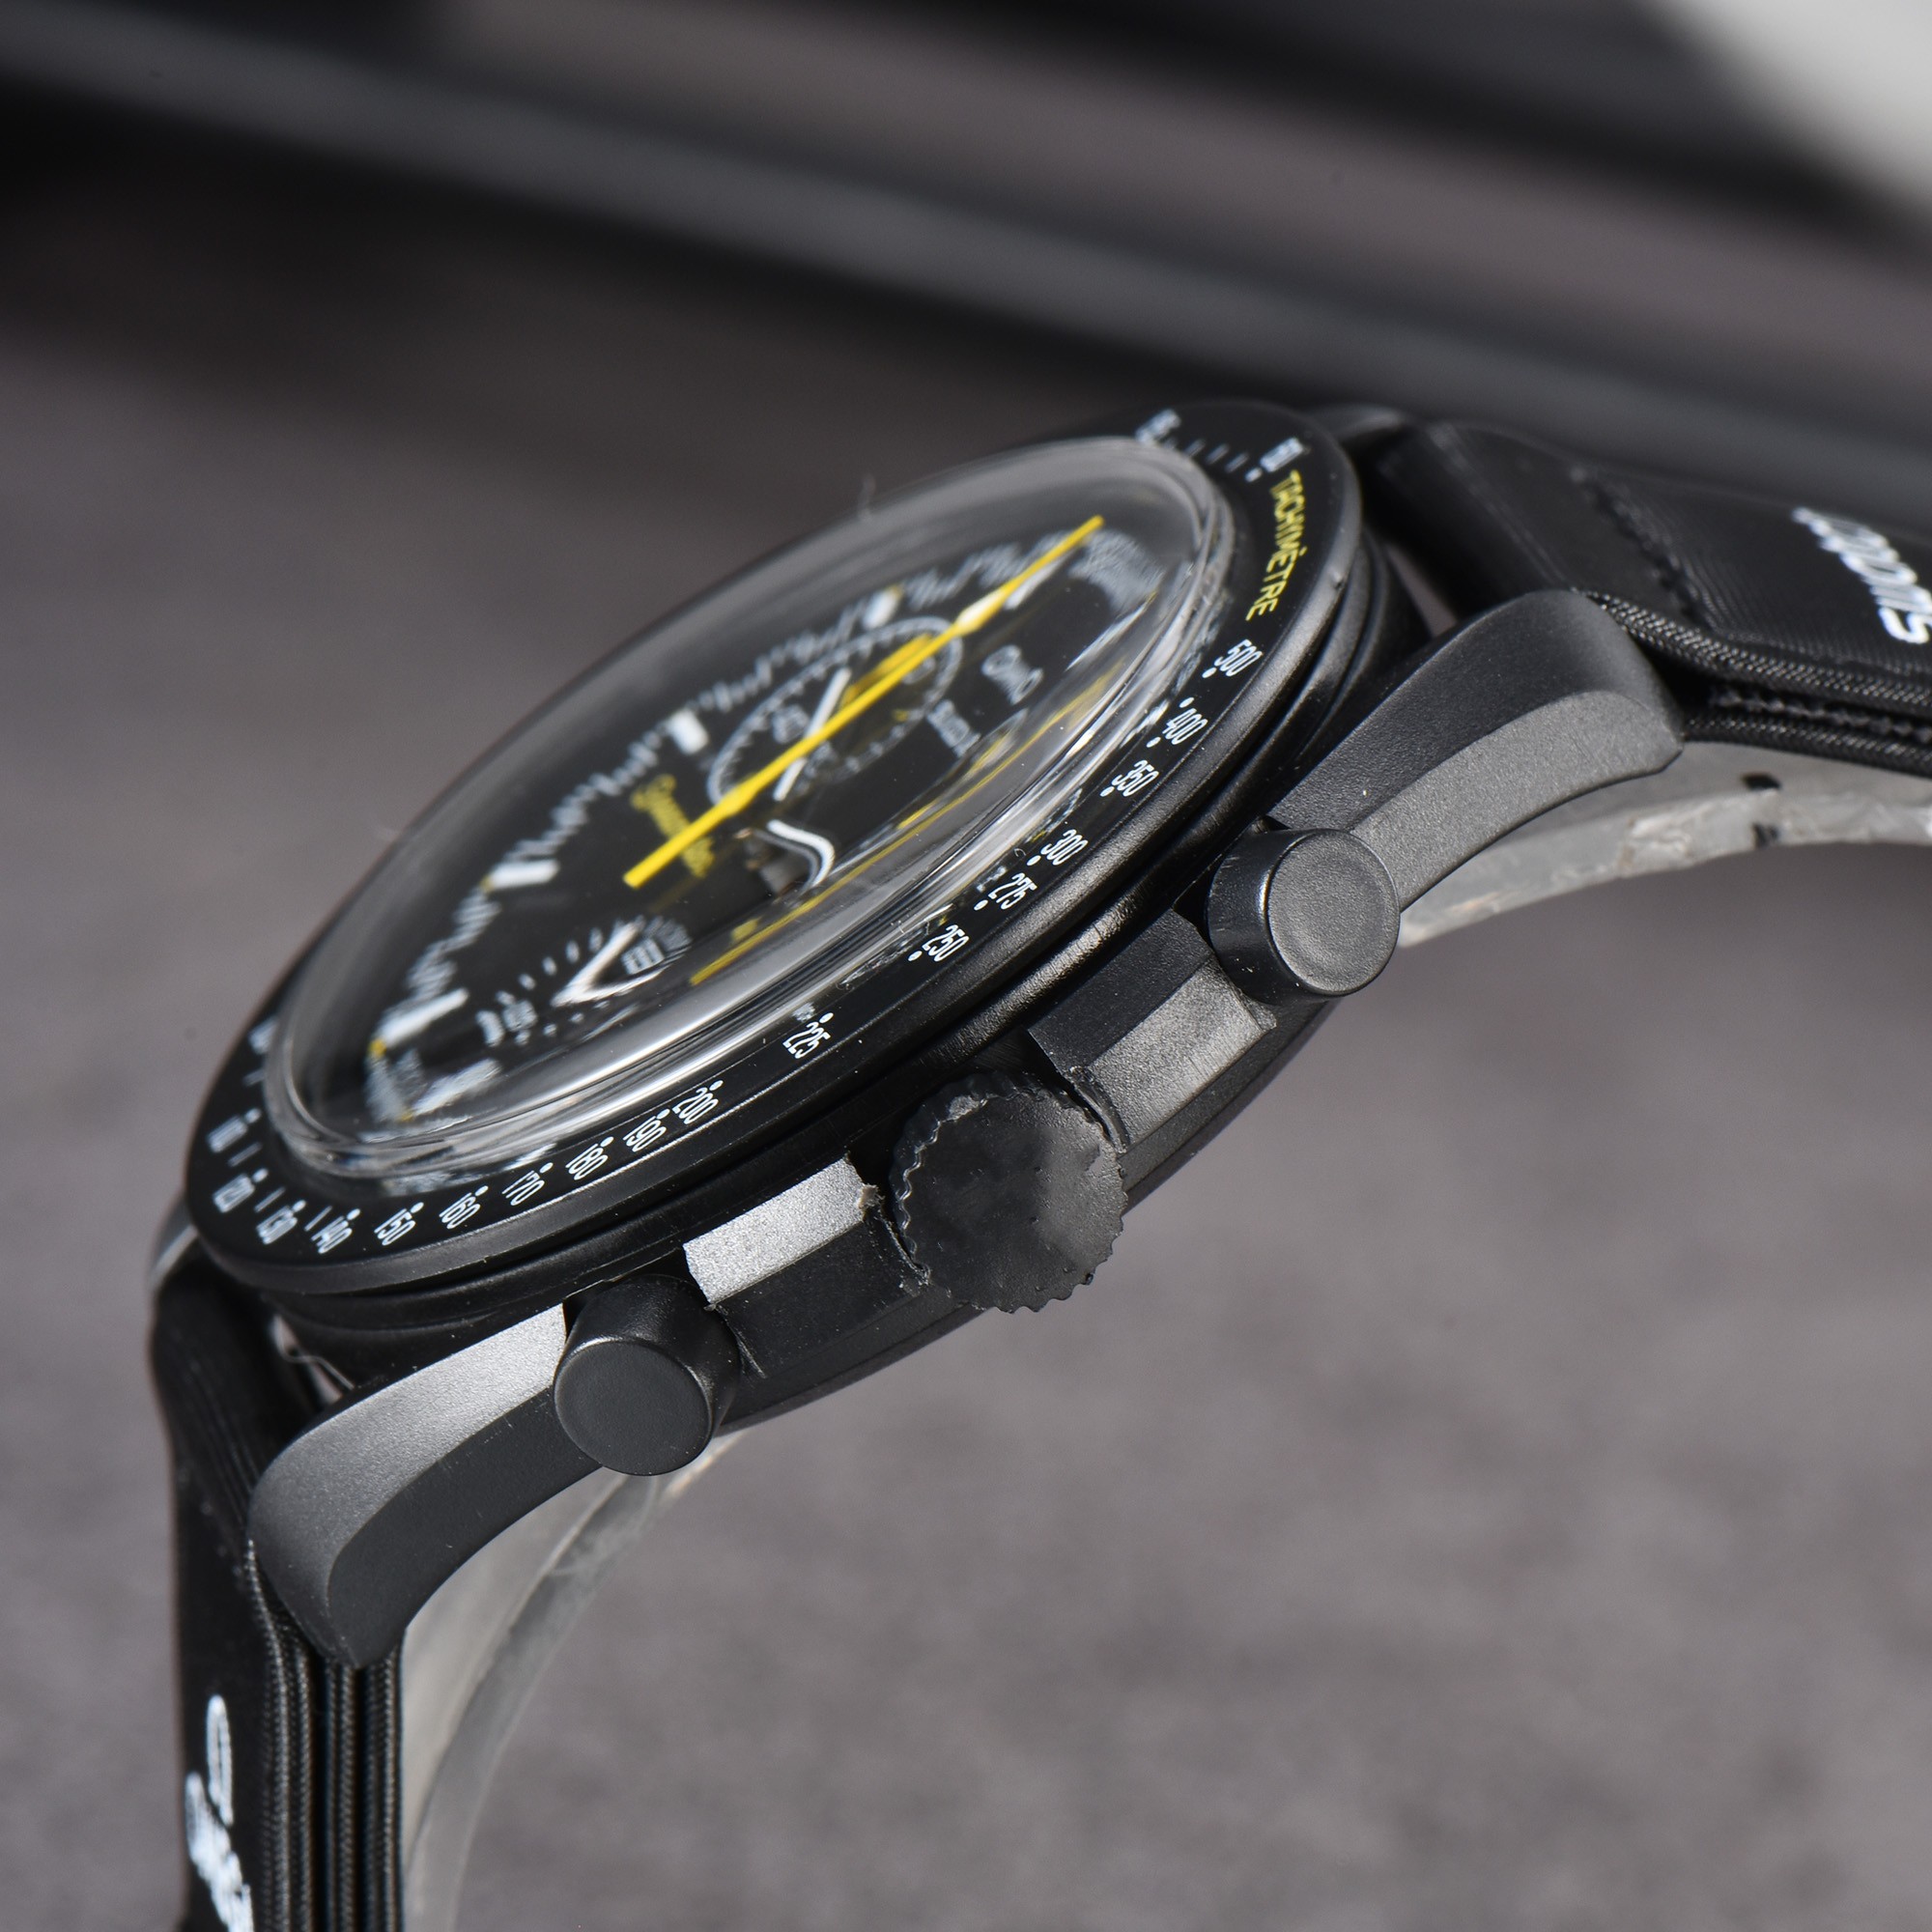 핫 판매 브랜드 새로운 OMG는 패션 캐주얼 남자 시계 고품질 석영 전체 기능 크로노 그래프 워치